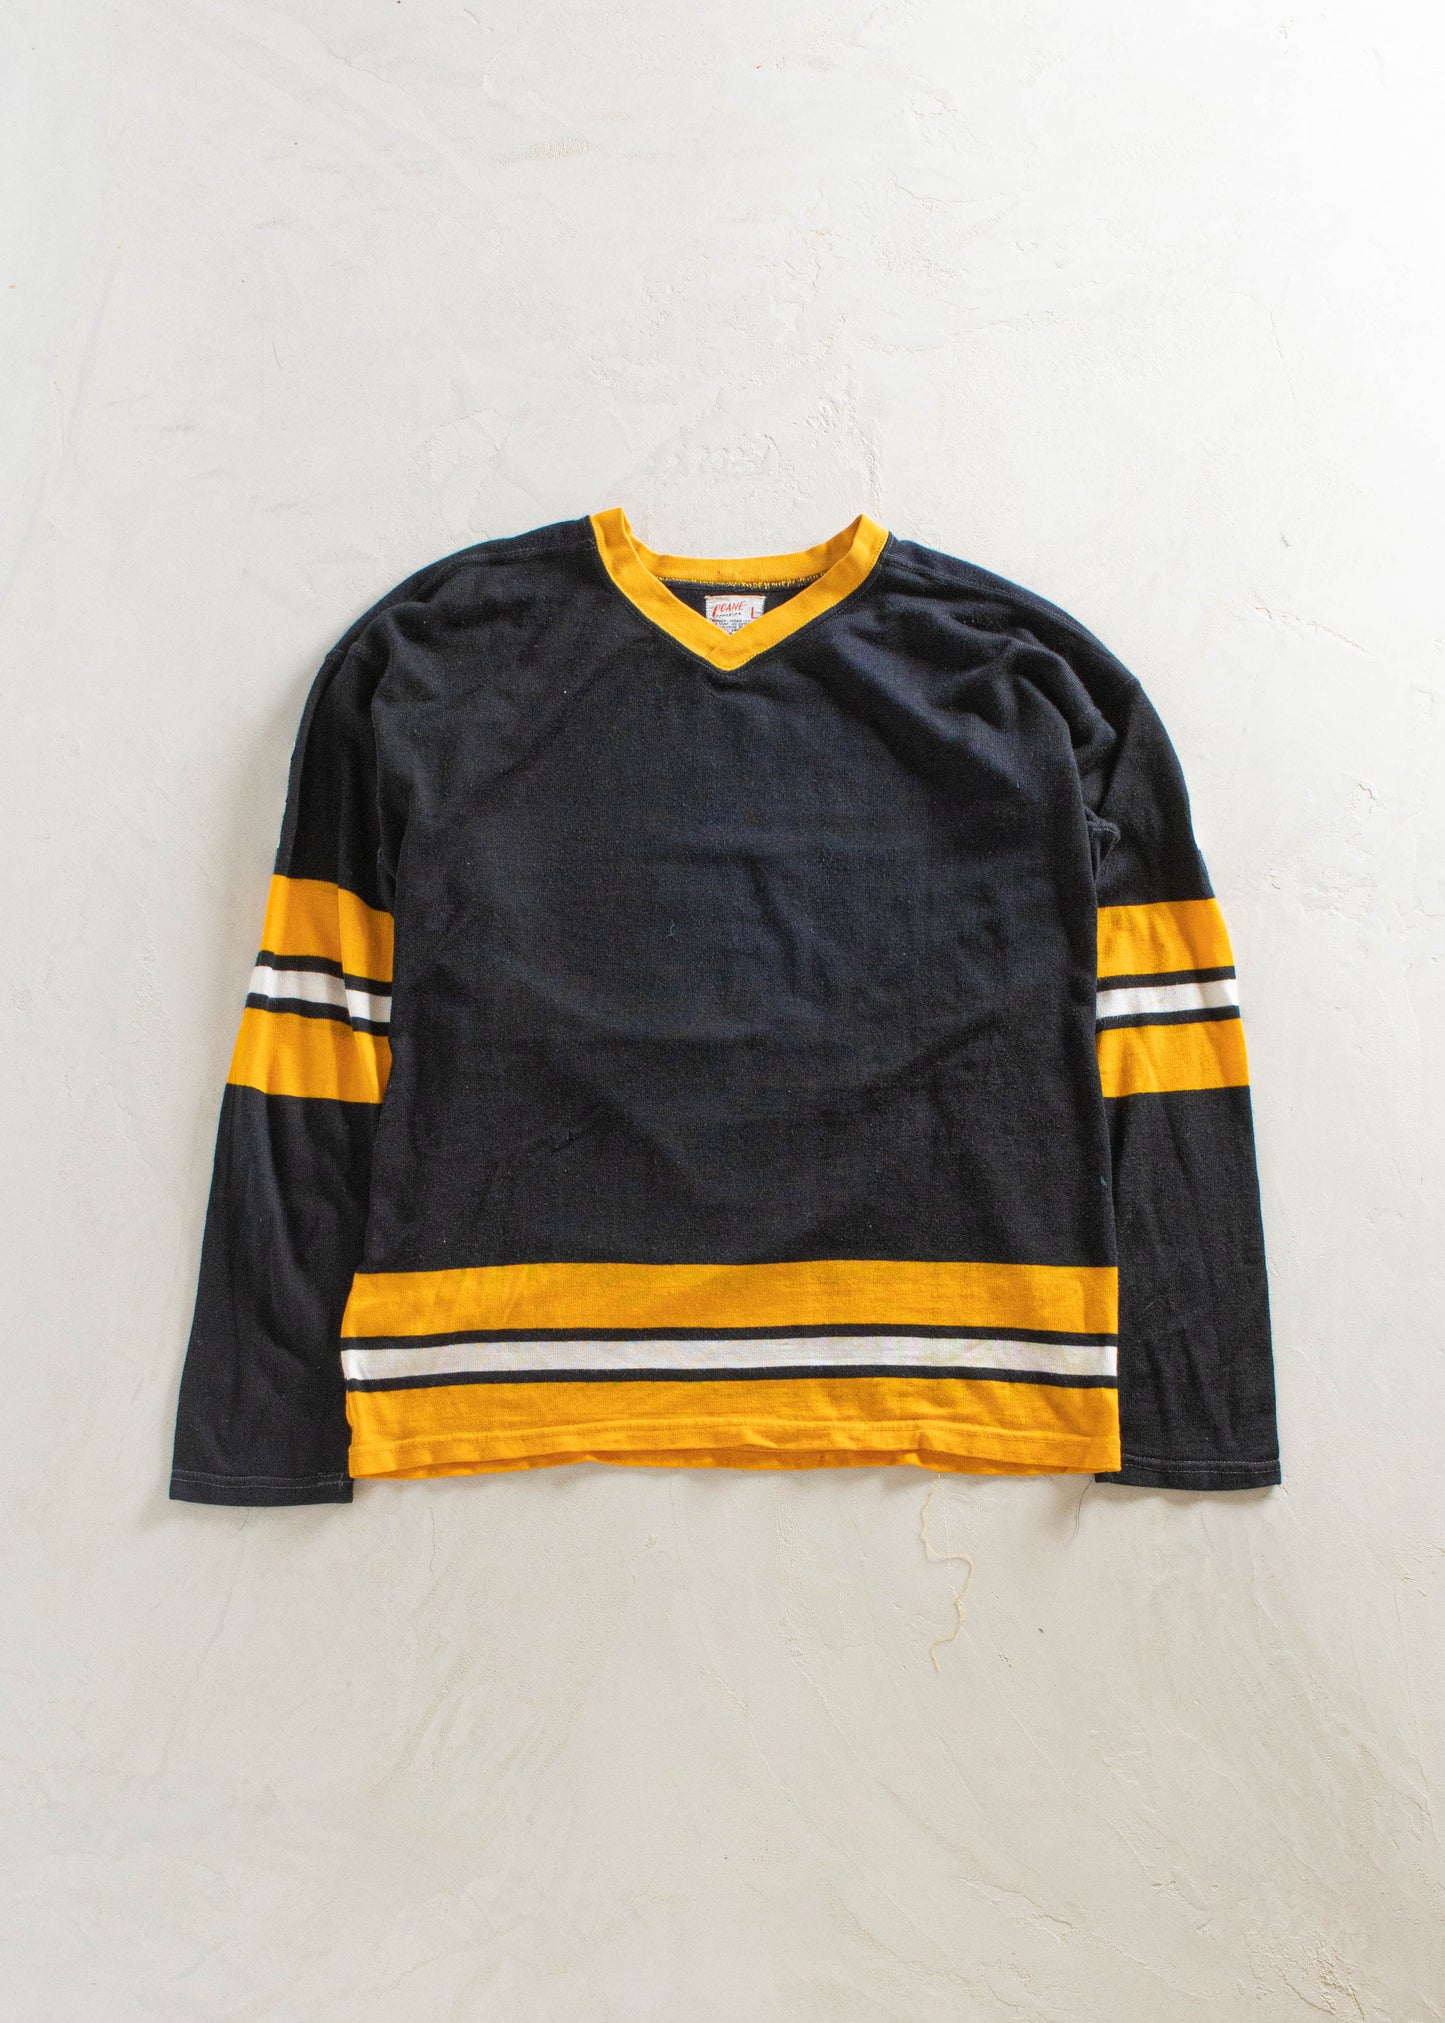 1980s Coane Long Sleeve Sport Jersey Size L/XL